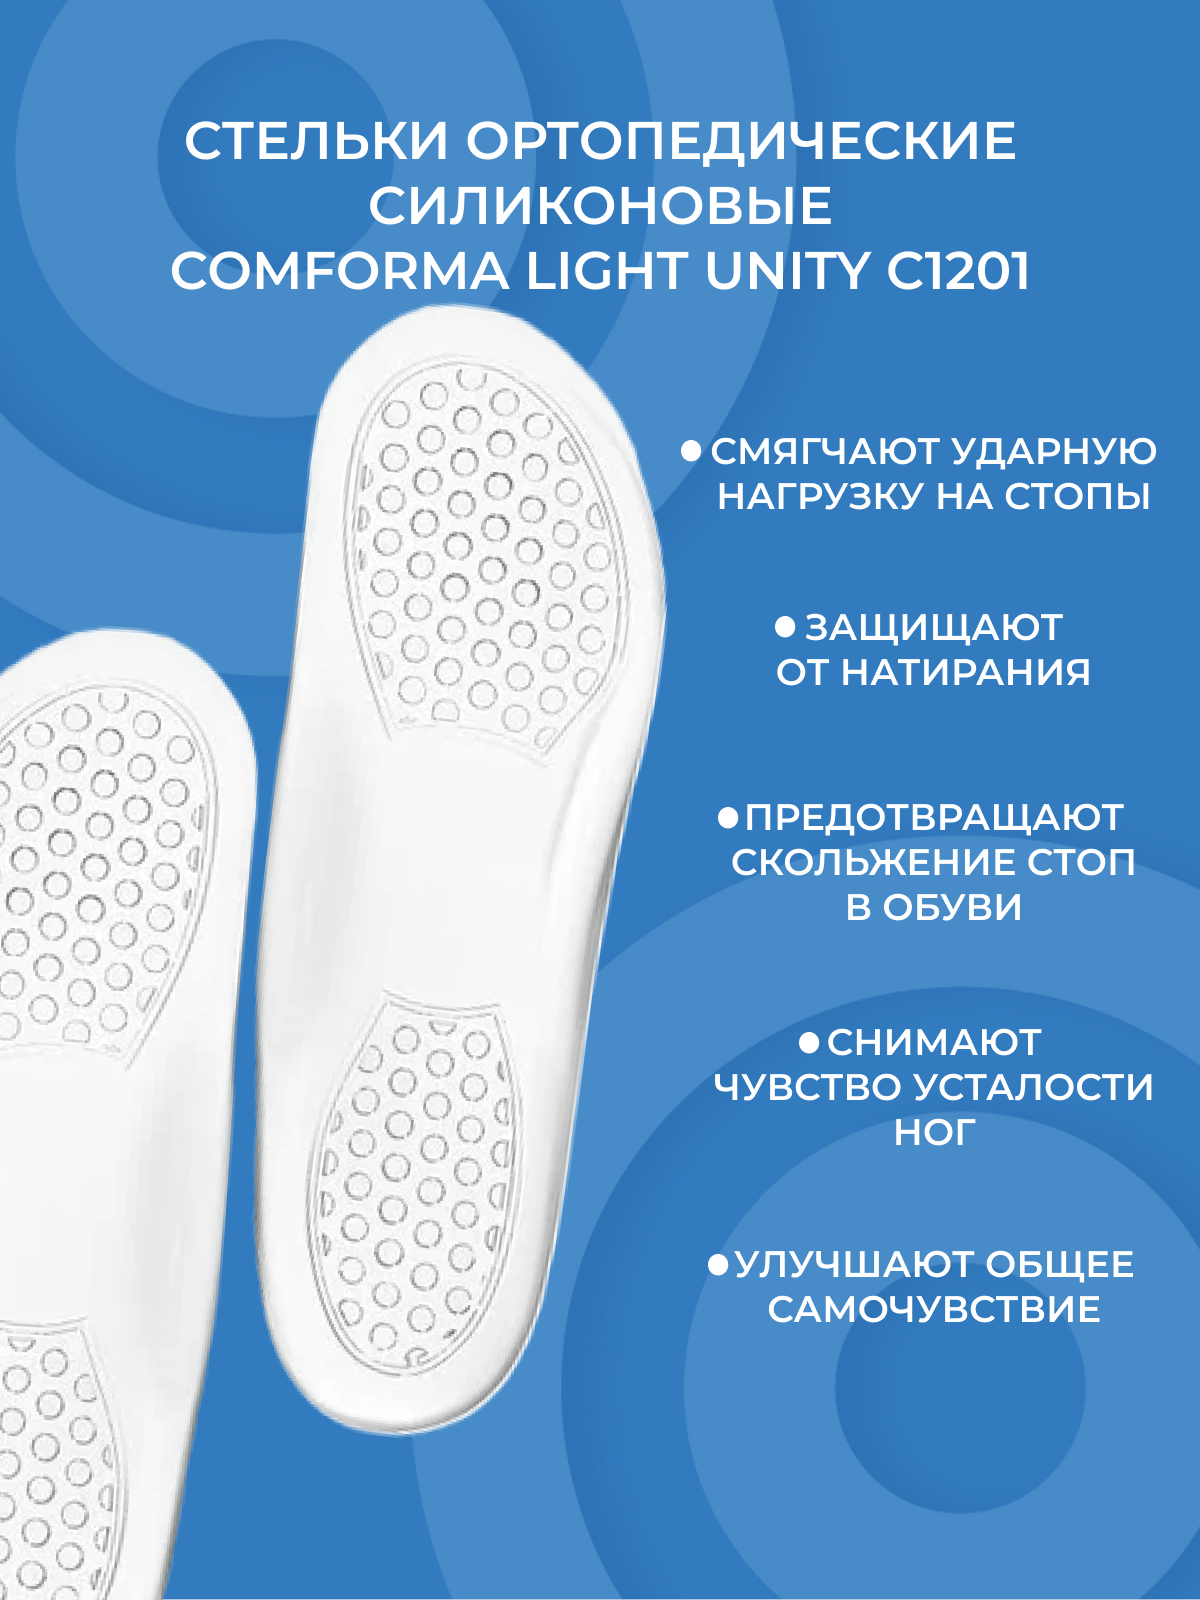 Стельки ортопедические силиконовые Comforma Light Unity С1201